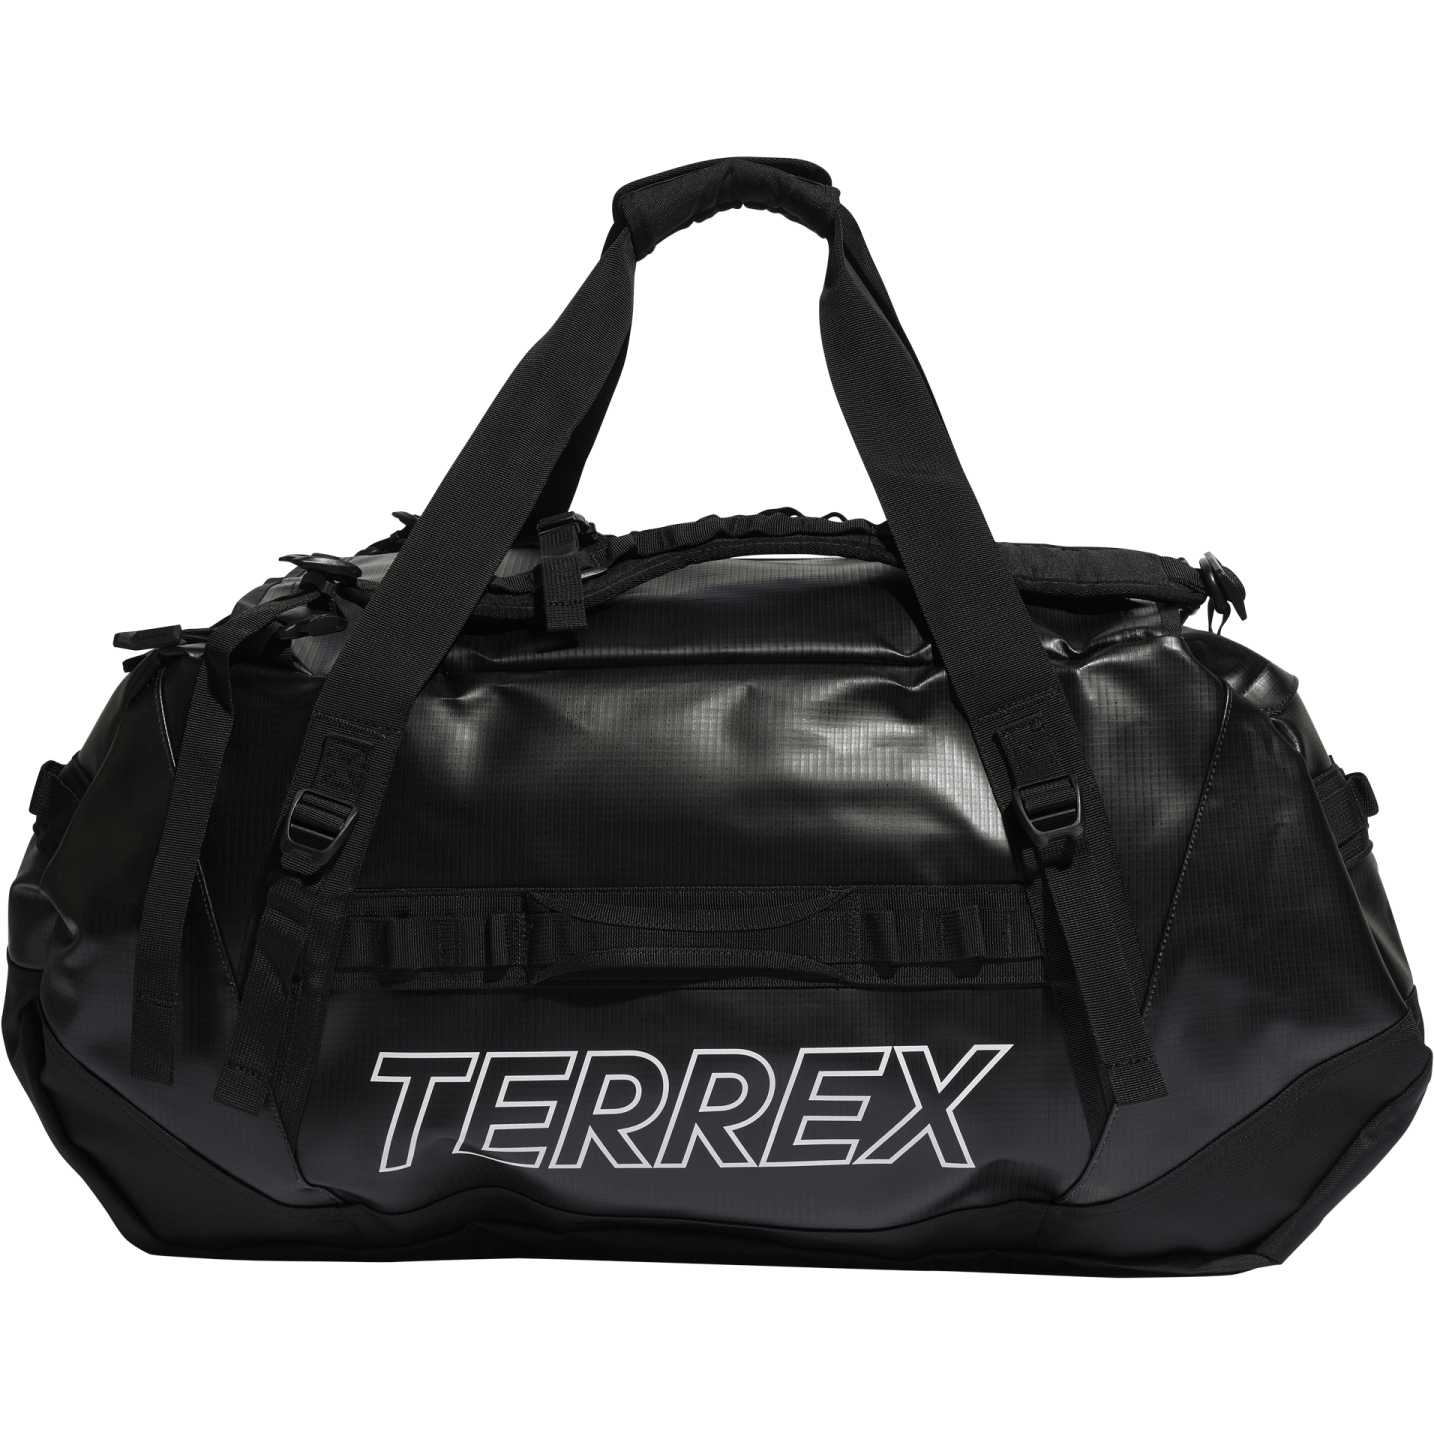 Produktbild von adidas TERREX RAIN.RDY Expedition Duffel Bag L - 100L - schwarz/weiß IC5652